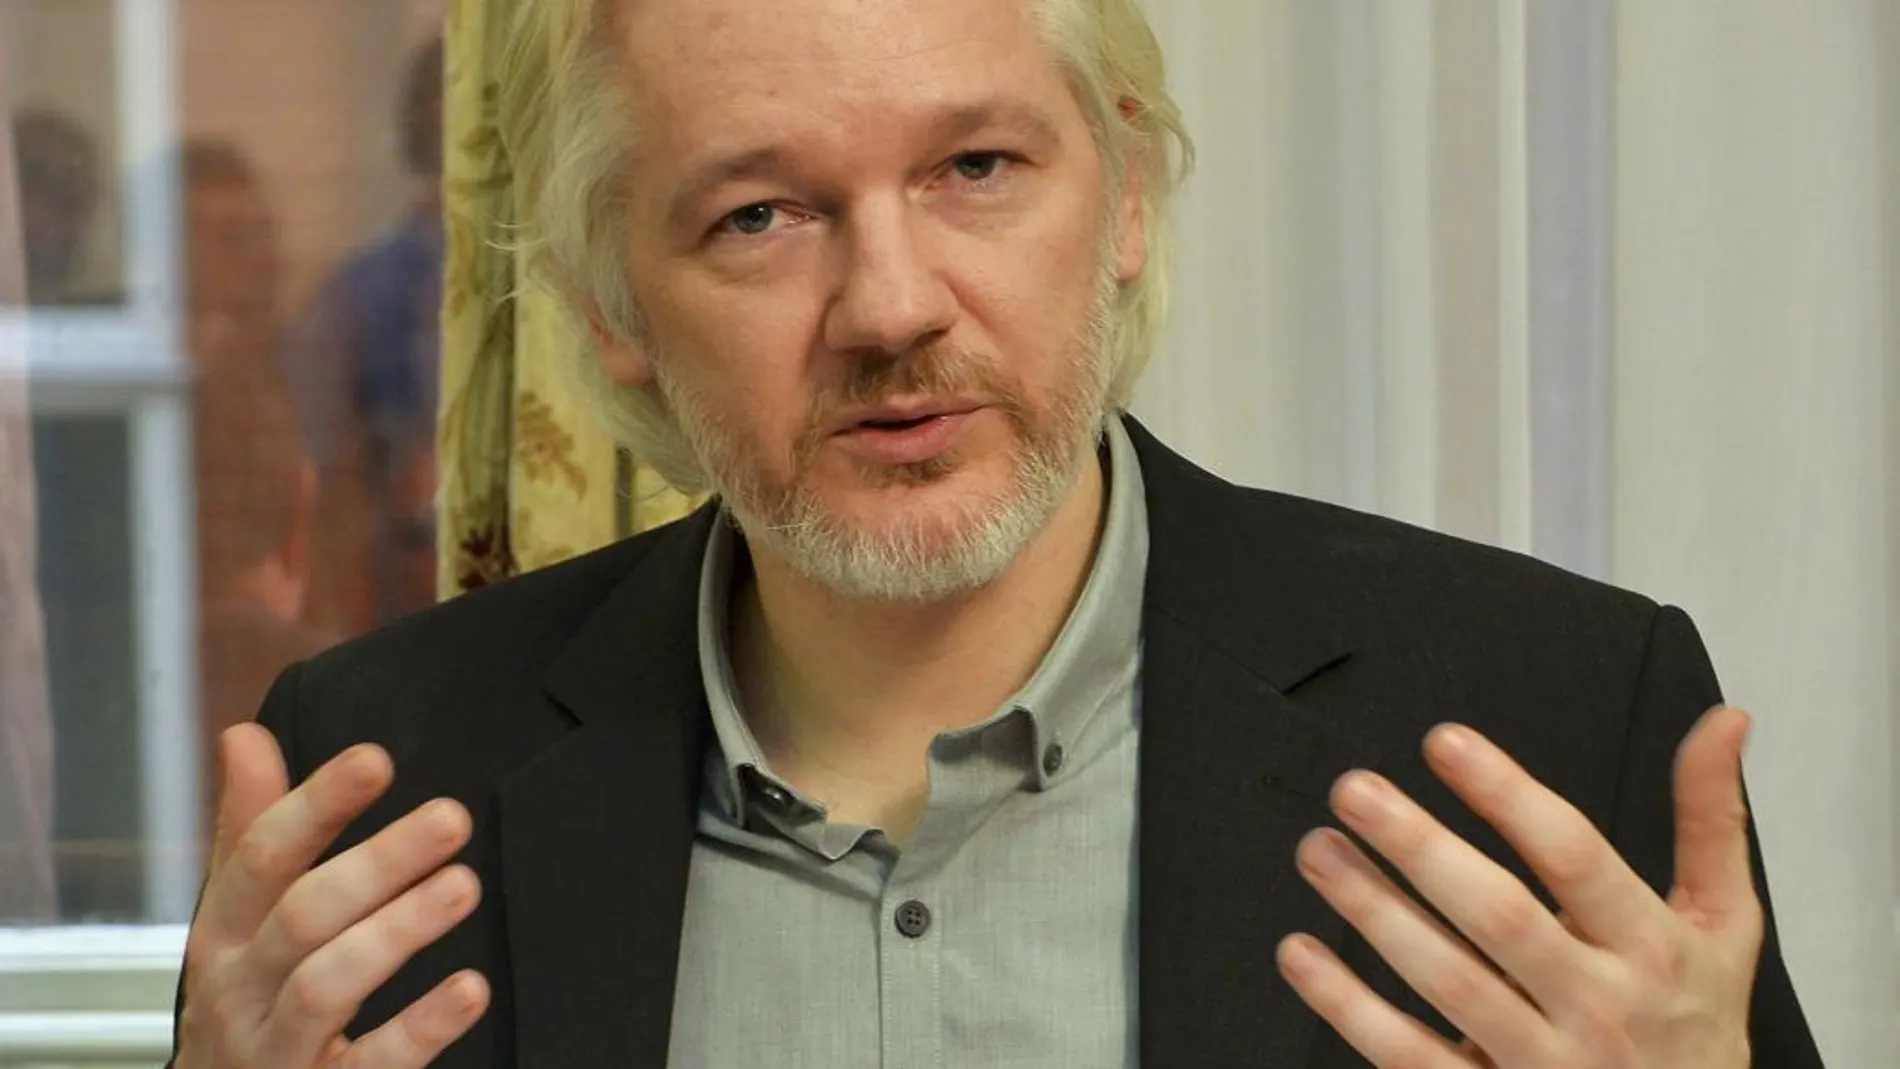 El fundador de WikiLeaks, Julian Assange, durante una conferencia en agosto de 2014 en la embajada de Ecuador en Londres